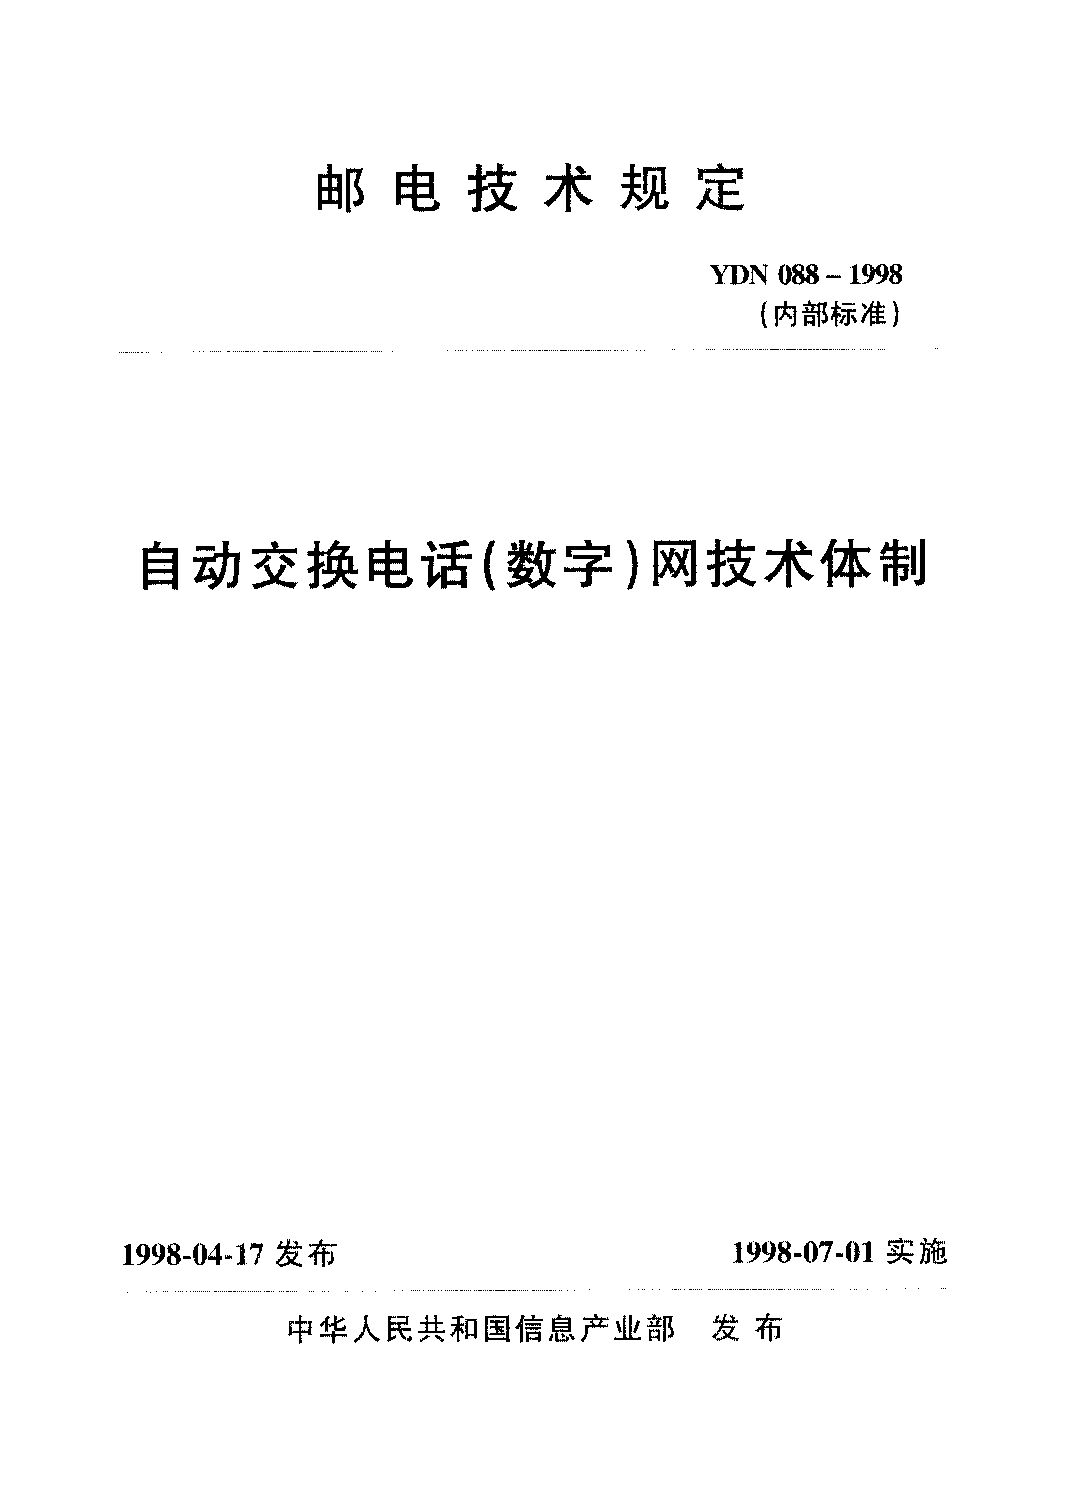 YDN 088-1998封面图